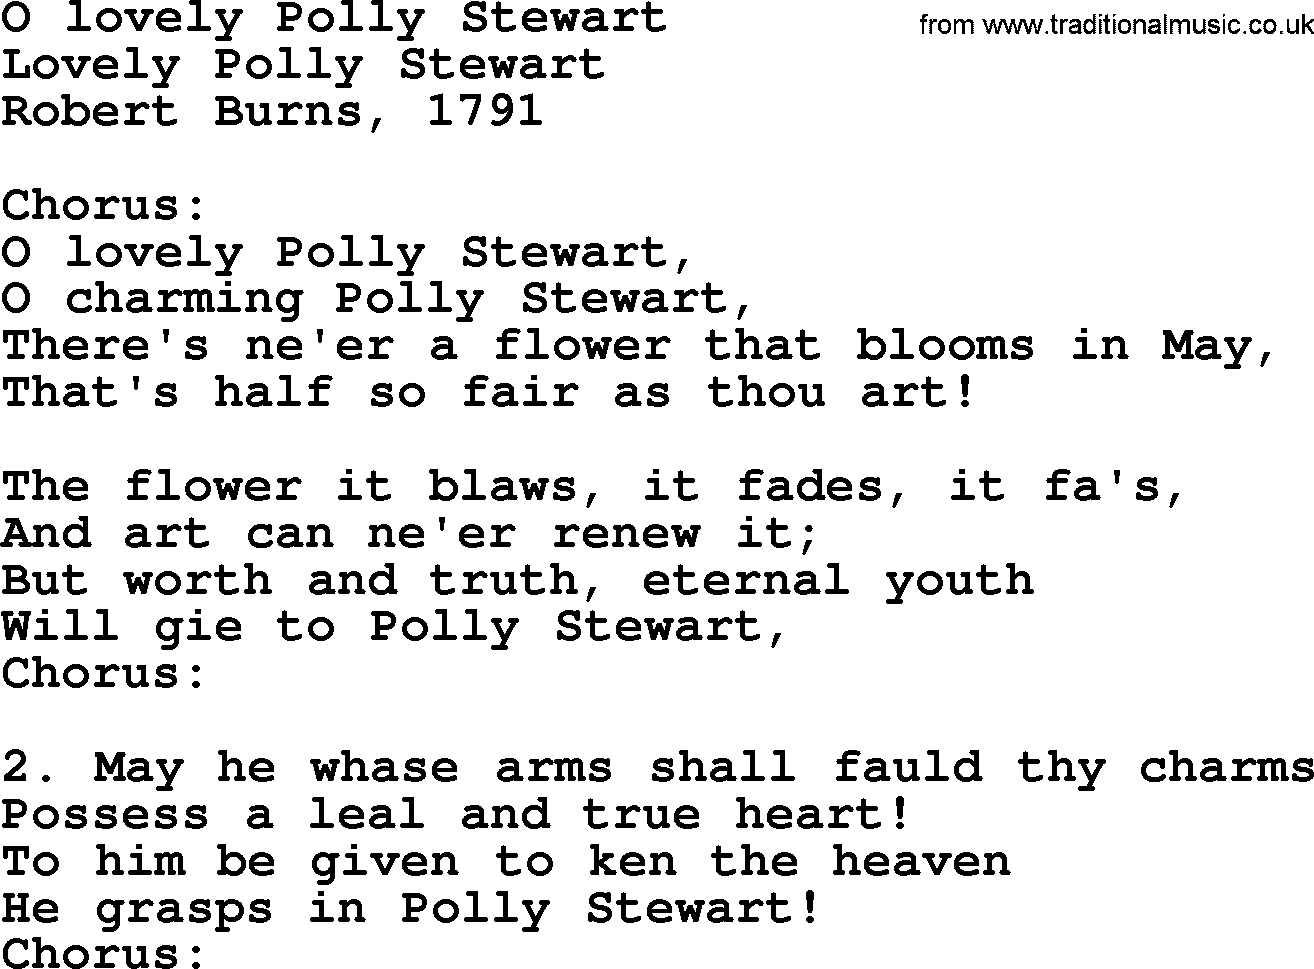 Robert Burns Songs & Lyrics: O Lovely Polly Stewart